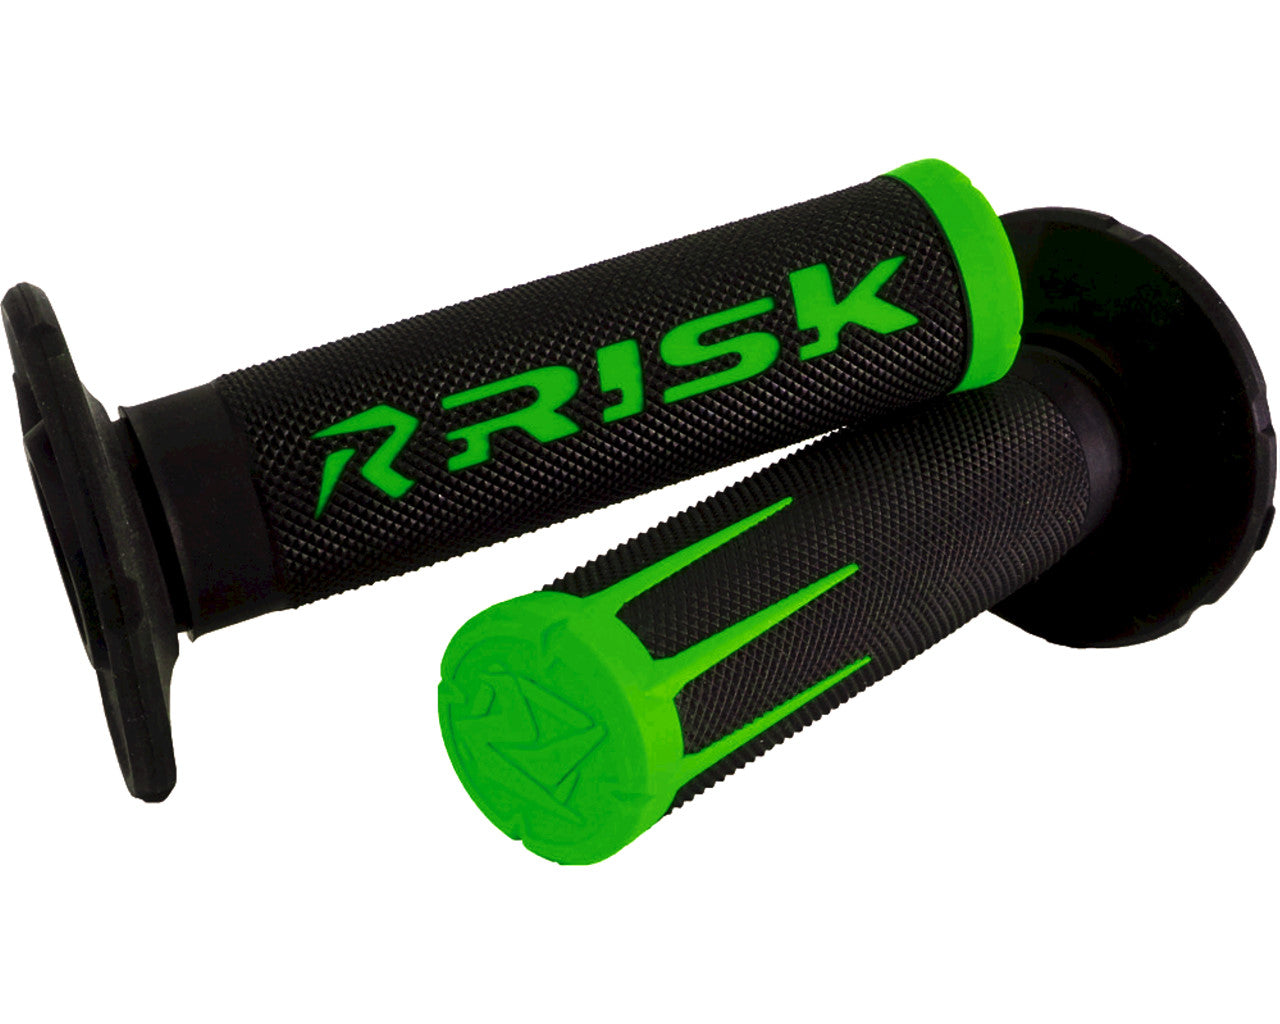 Risk Racing Fusion 2.0 Motorcycle 7/8" MX Grip Kit with Adhesive Kawasaki Green